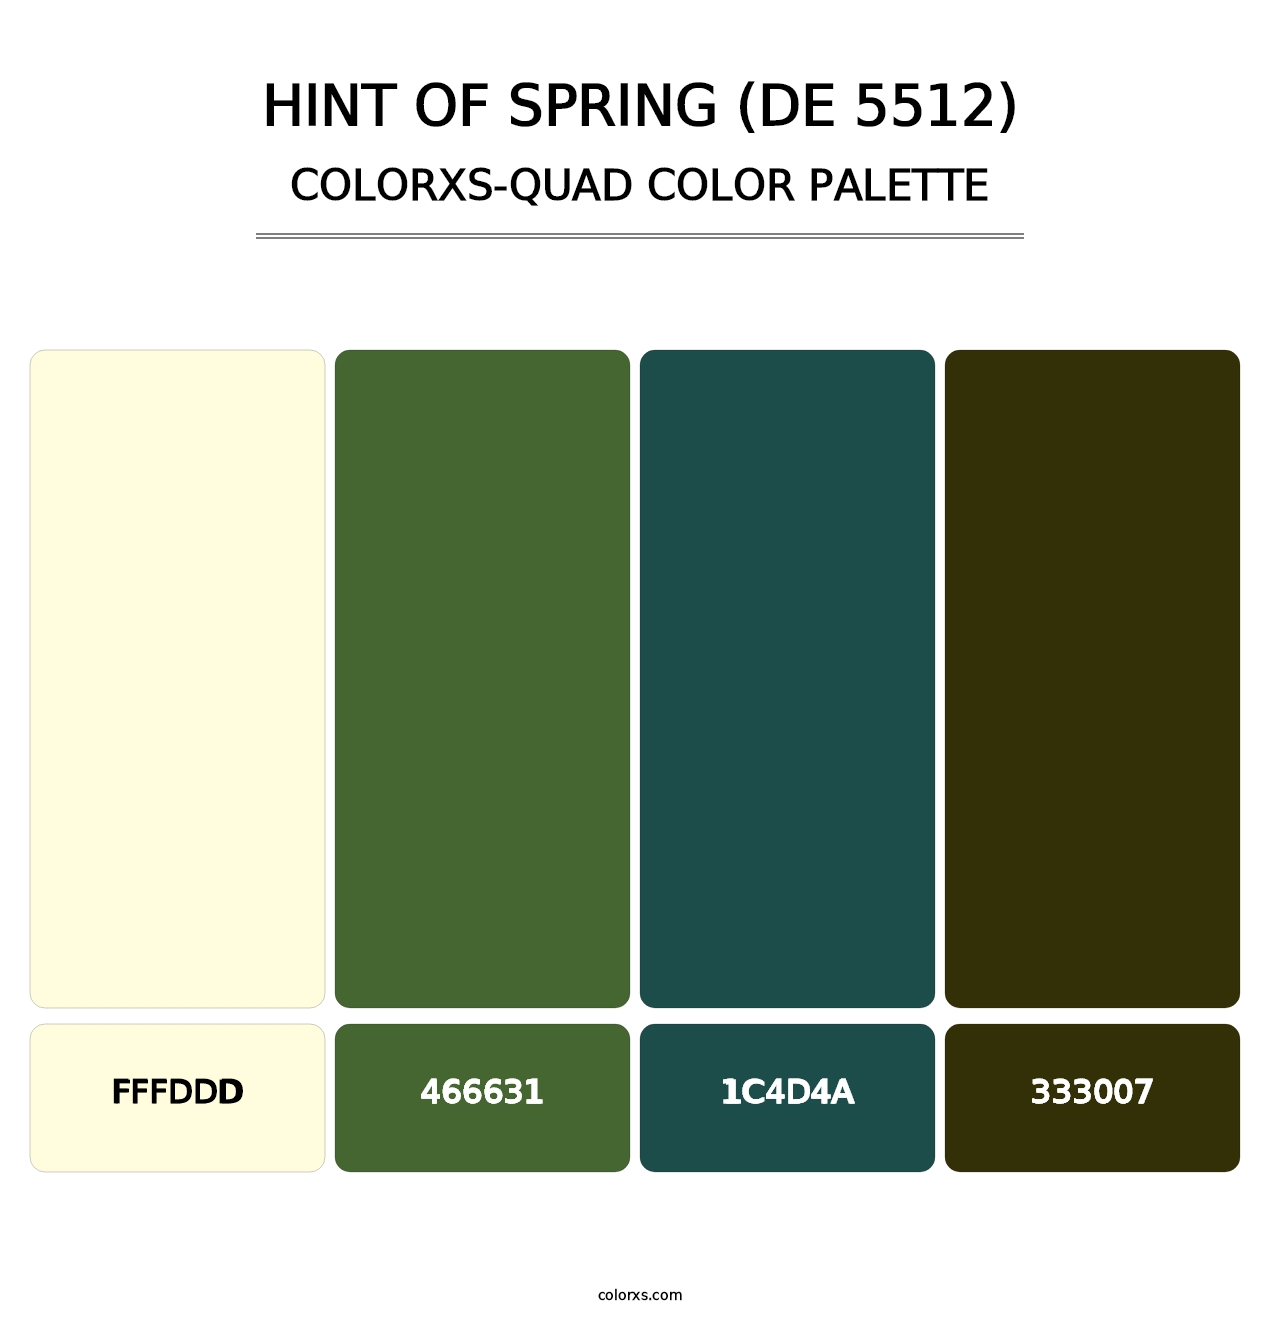 Hint of Spring (DE 5512) - Colorxs Quad Palette